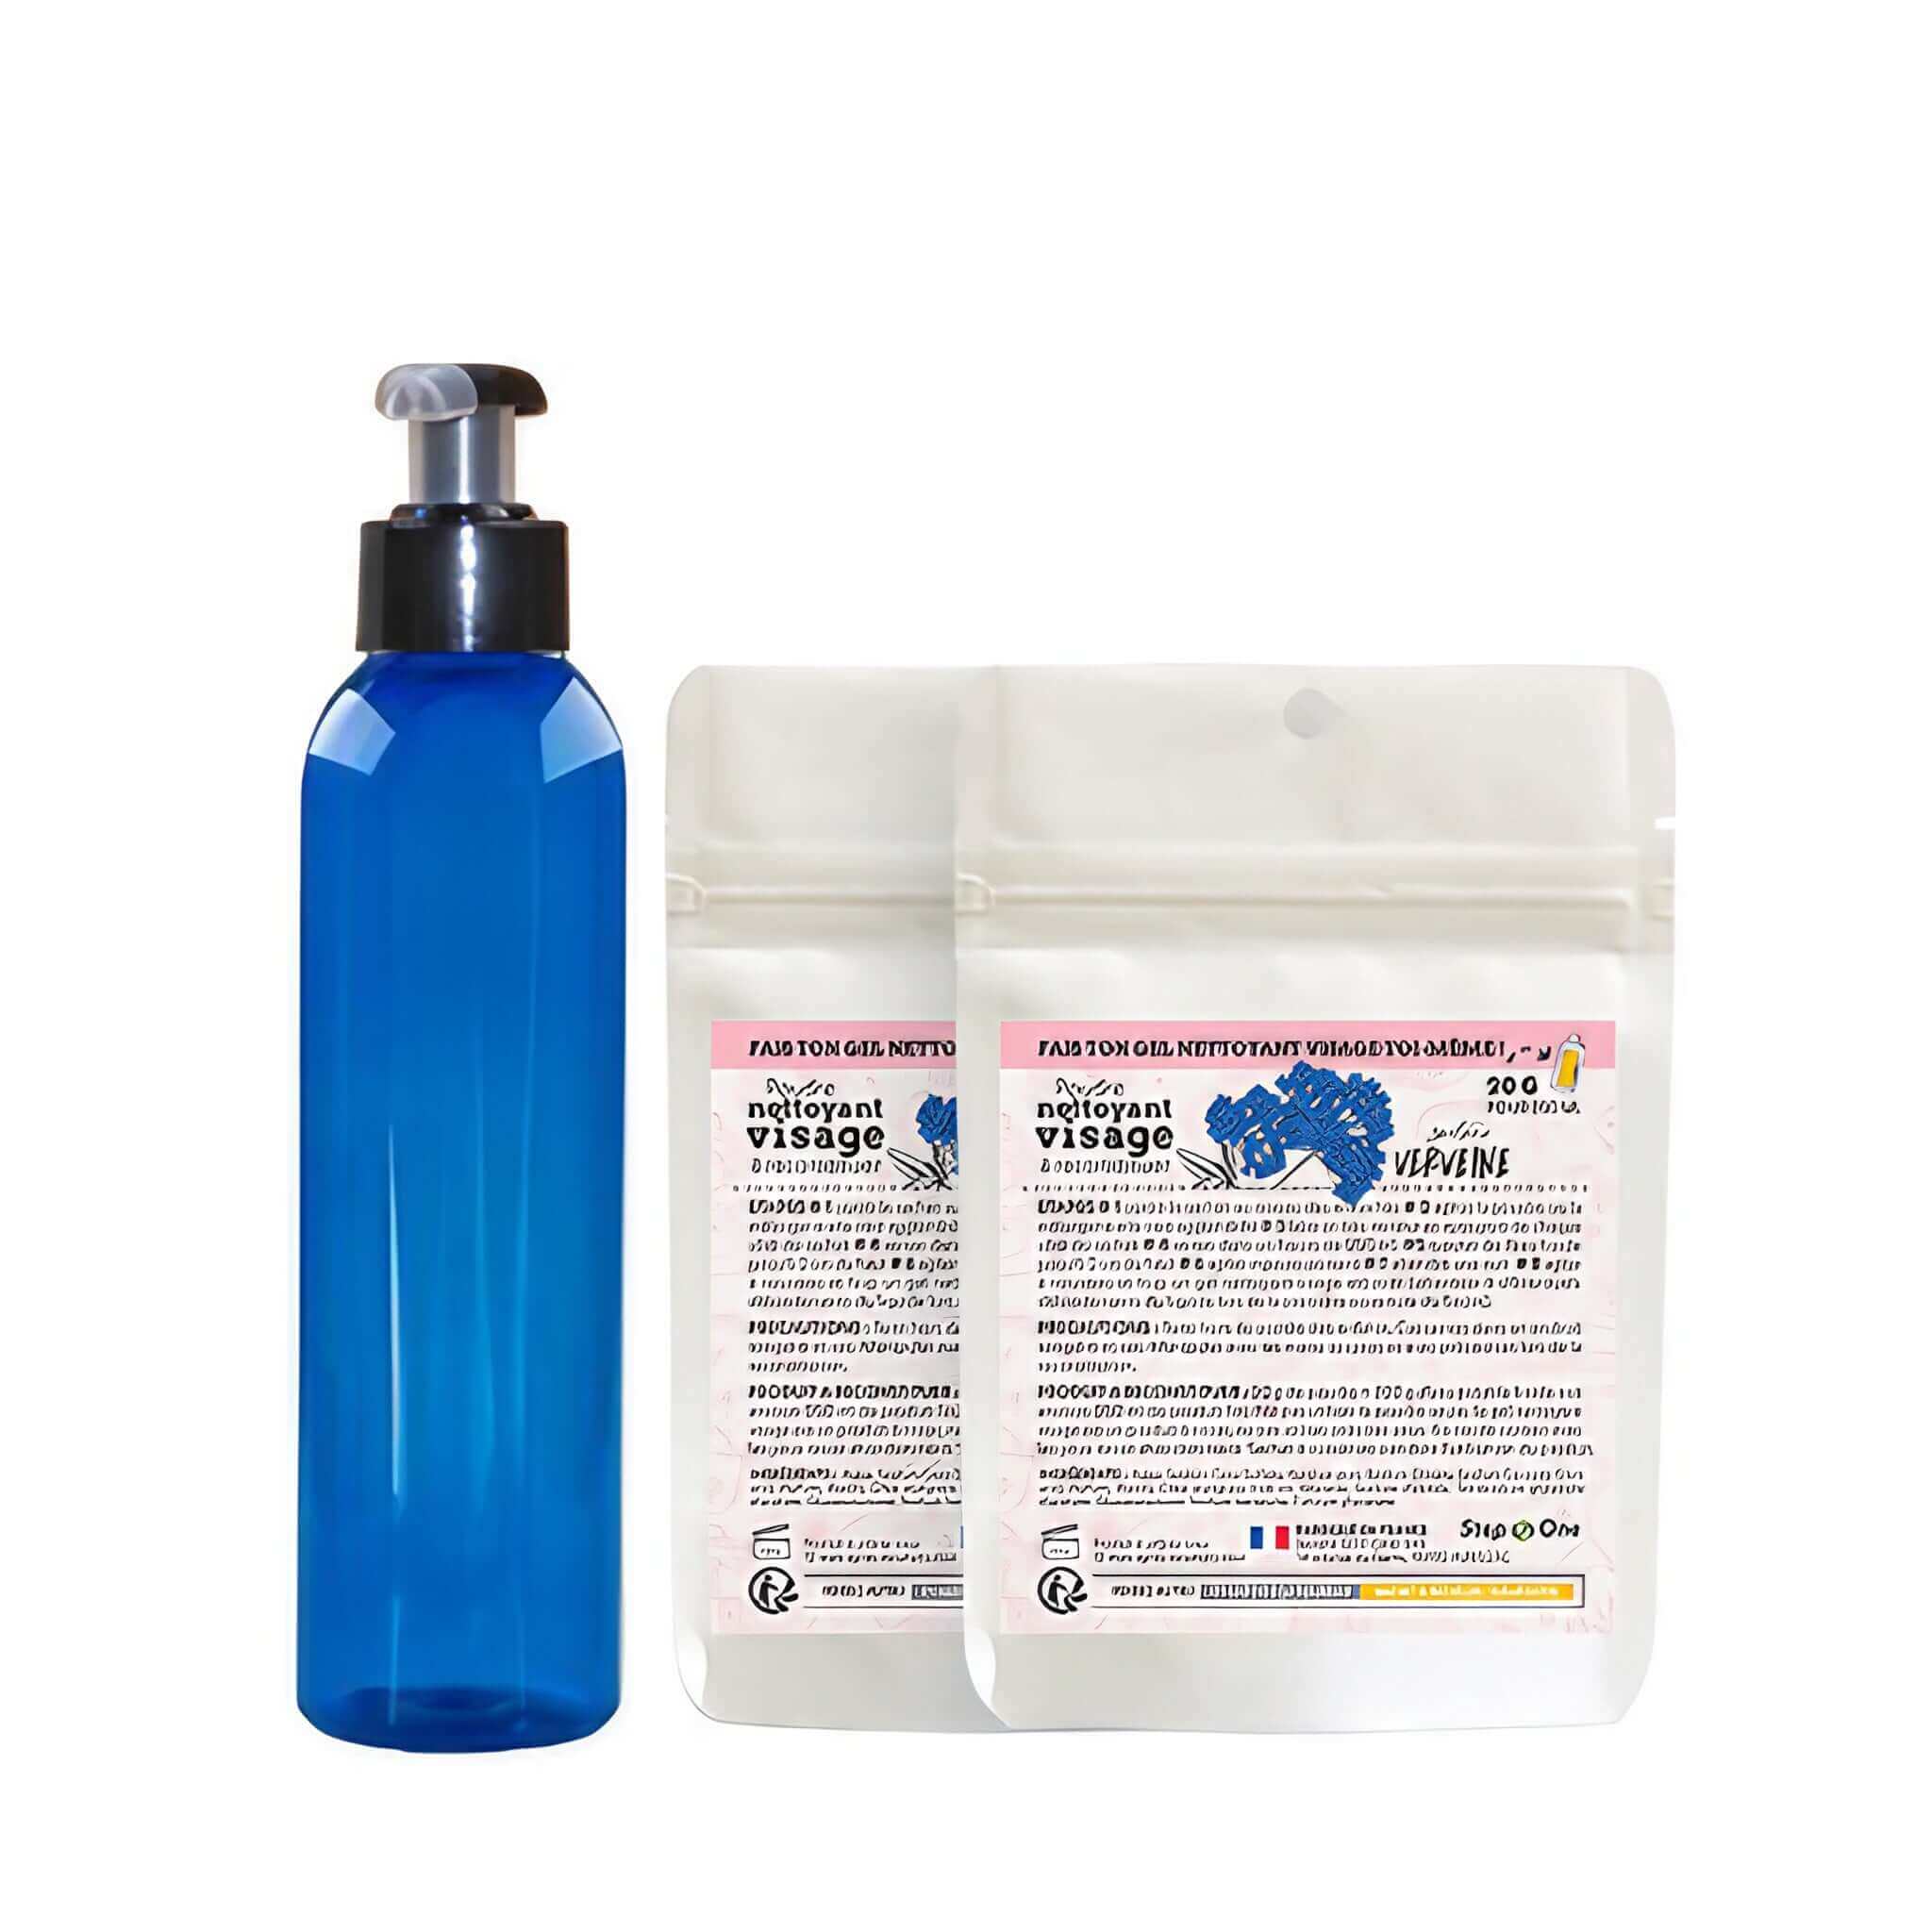 Kit de démarrage pour nettoyage du visage avec gel nettoyant parfumé à la Verveine, présenté dans un emballage éco-responsable